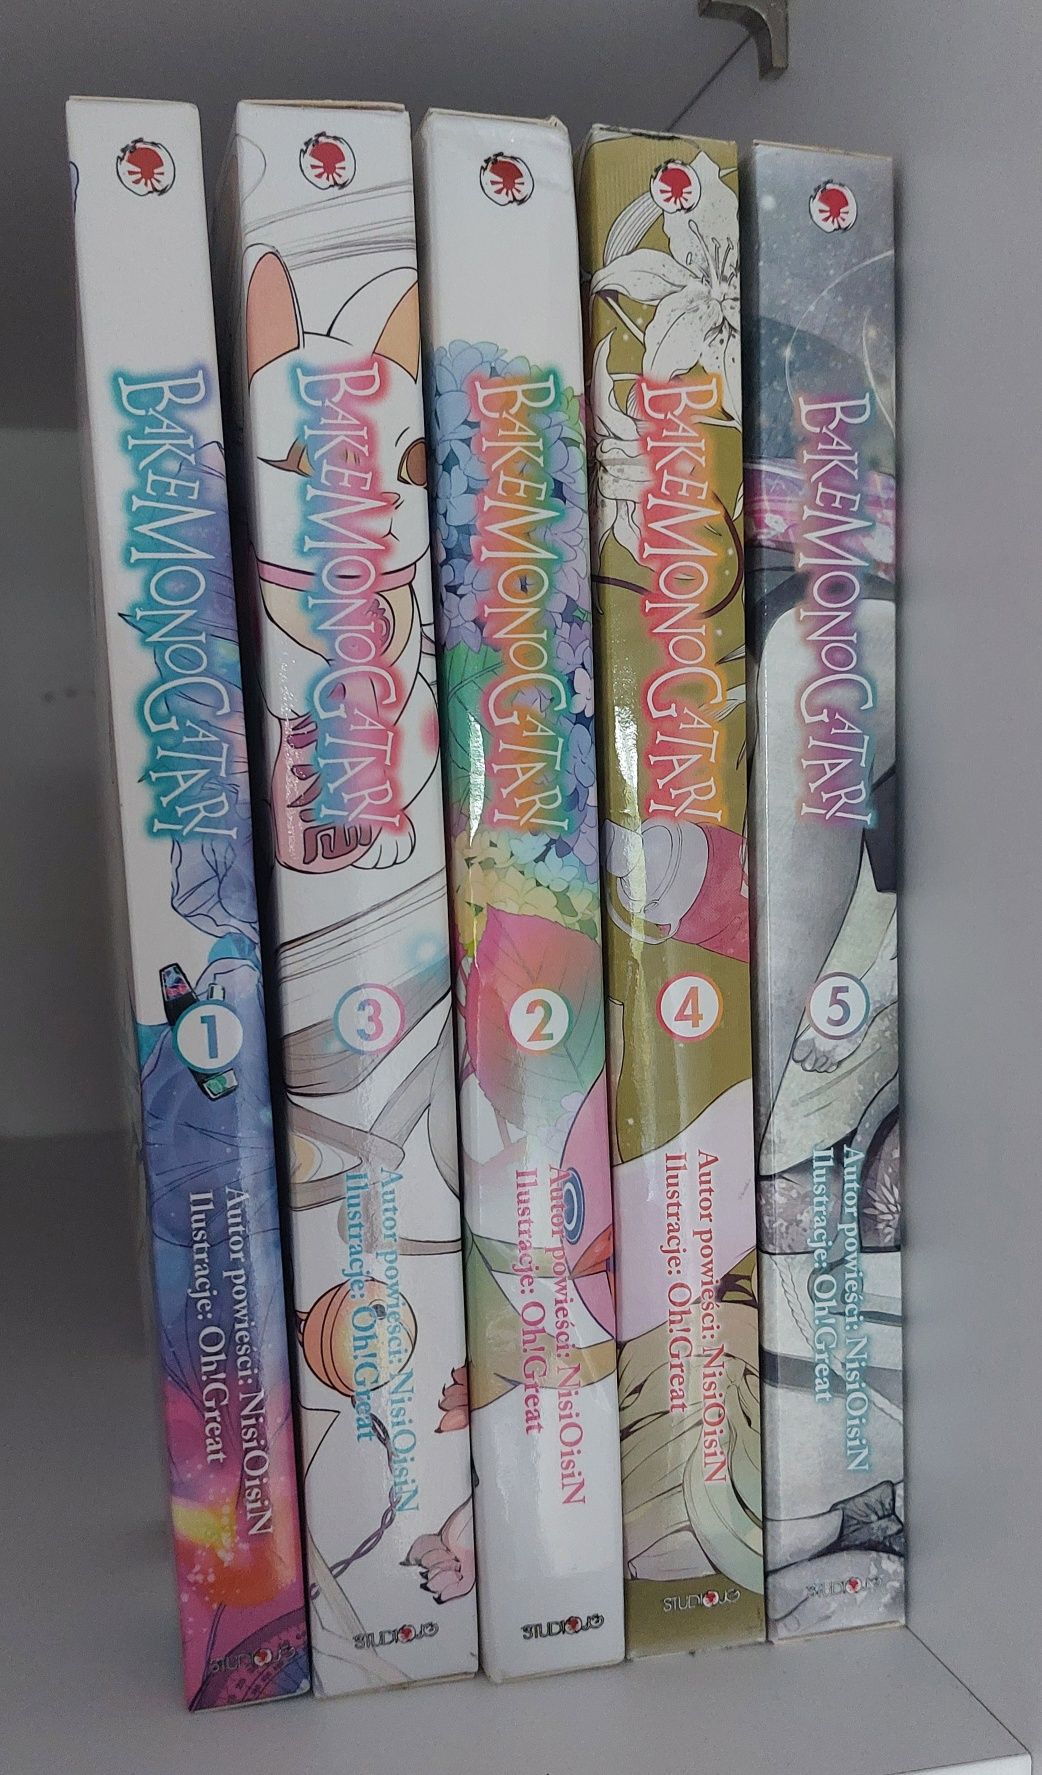 Bakemonogatari 1-5 edycja specjalna